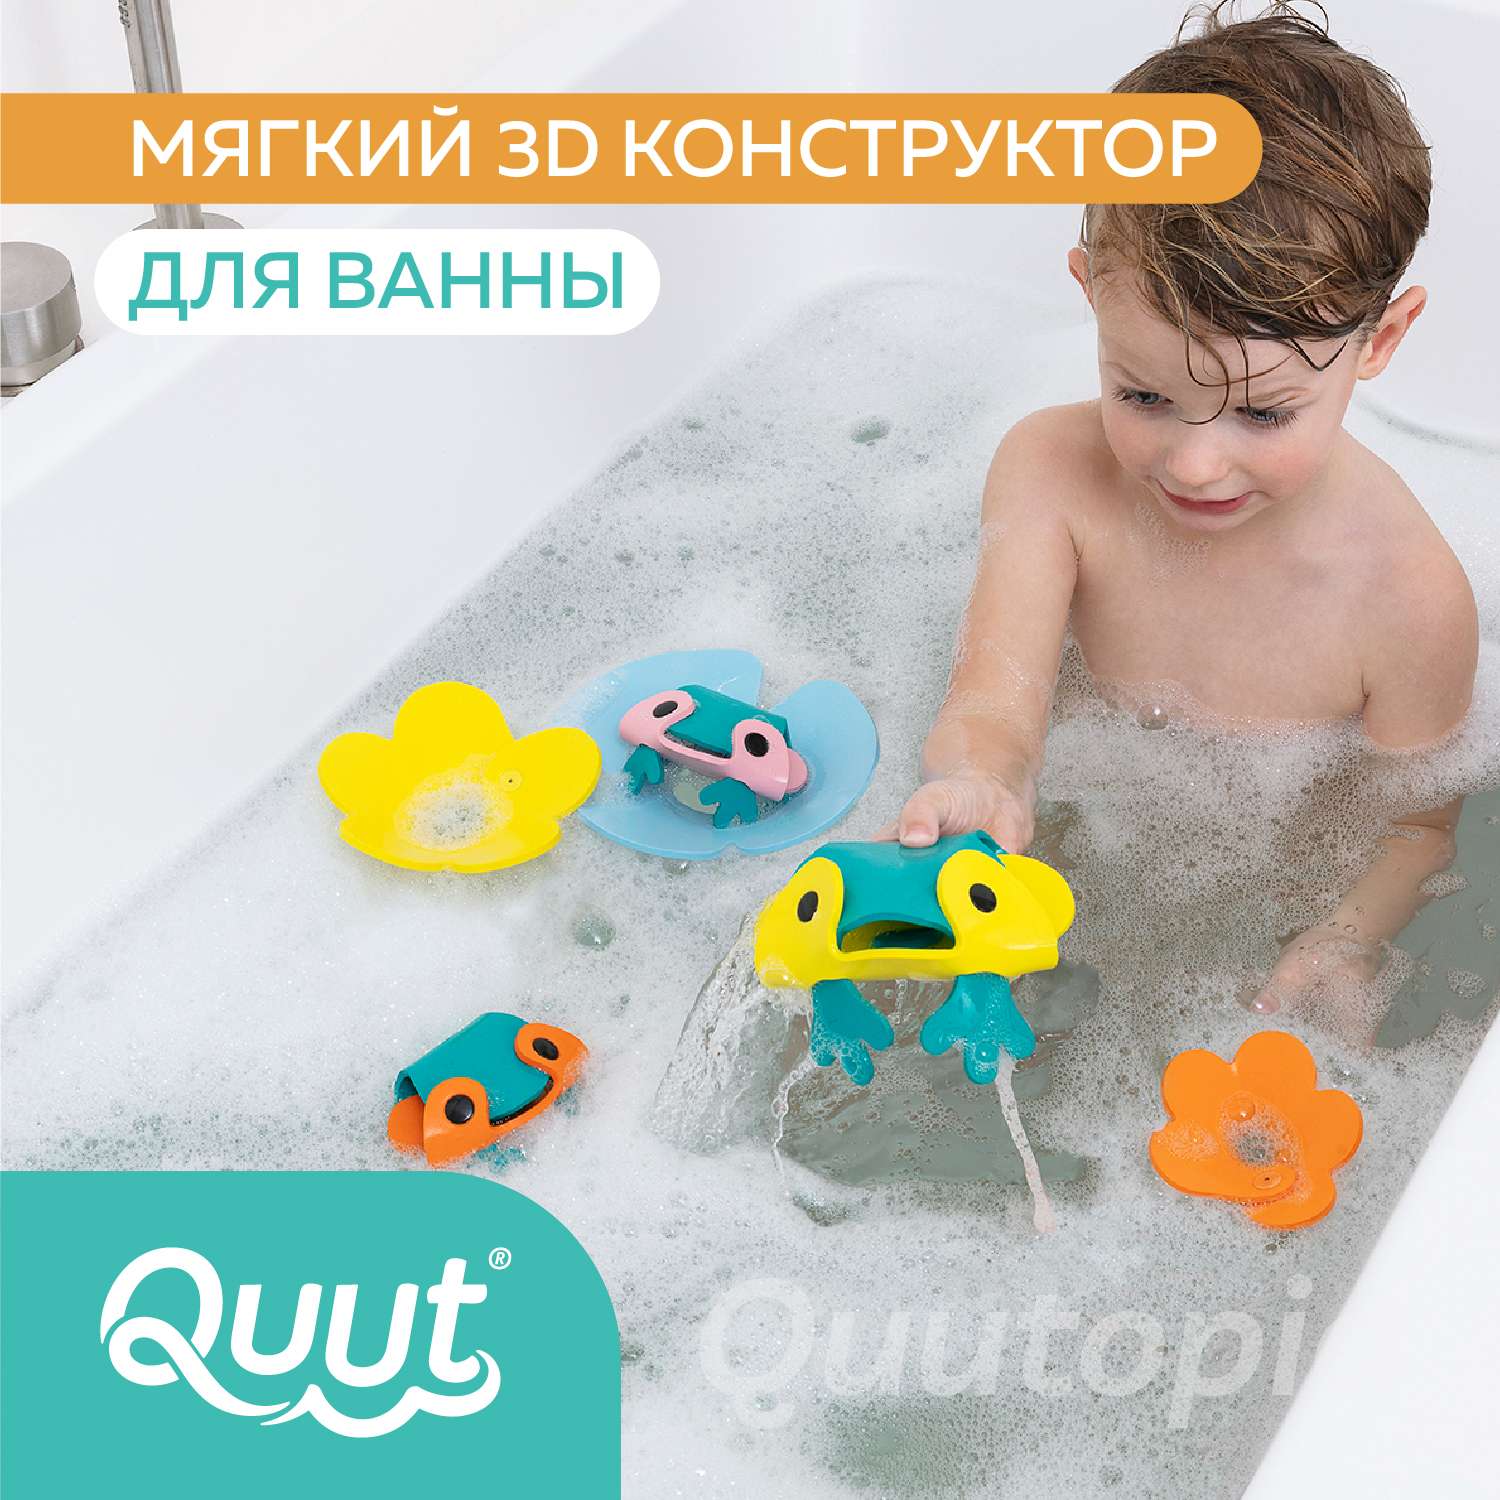 Конструктор 3D QUUT мягкий для игры в ванне Quutopia Пруд с лягушками 6 элементов - фото 2